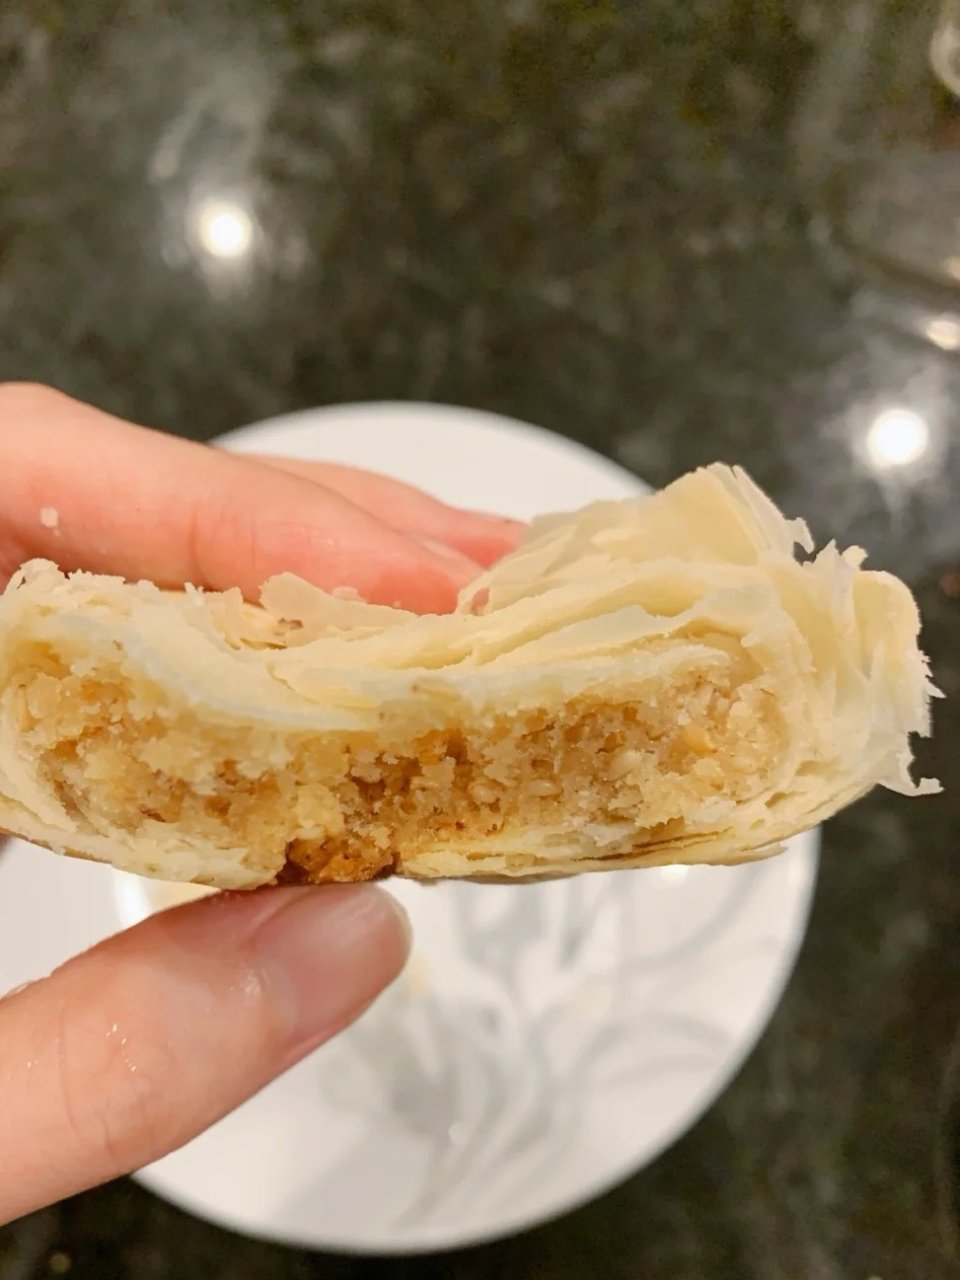 稻香村牛舌饼